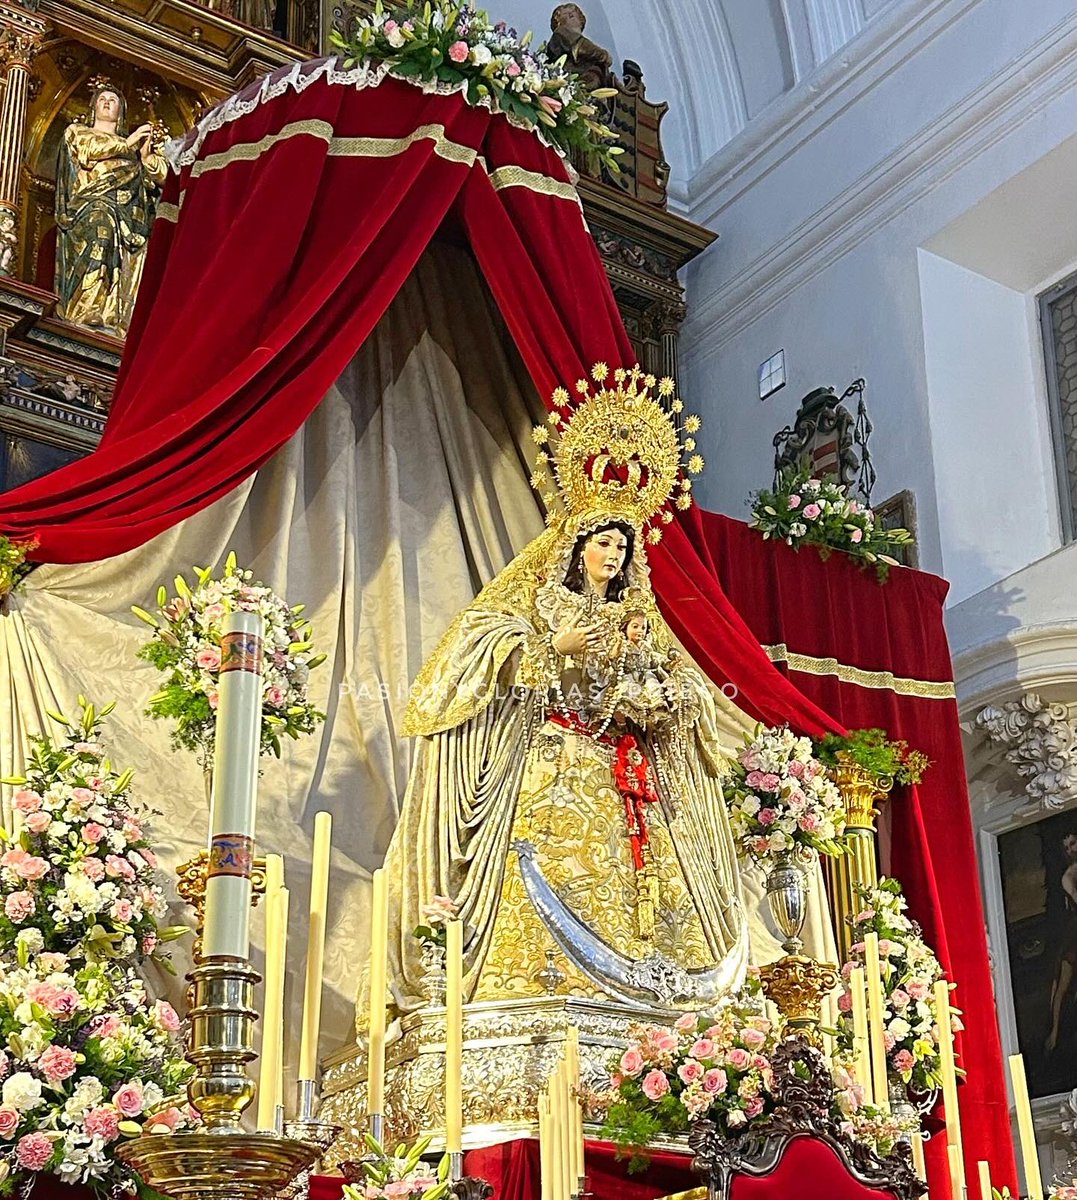 Altar de Cultos en Honor a Nuestra Señora de los Desamparados. #altar #Septenario #VirgendelosDesamparados #HermandaddelaCaridad #Cultos #Glorias #FiestasVotivas #PriegodeCordoba